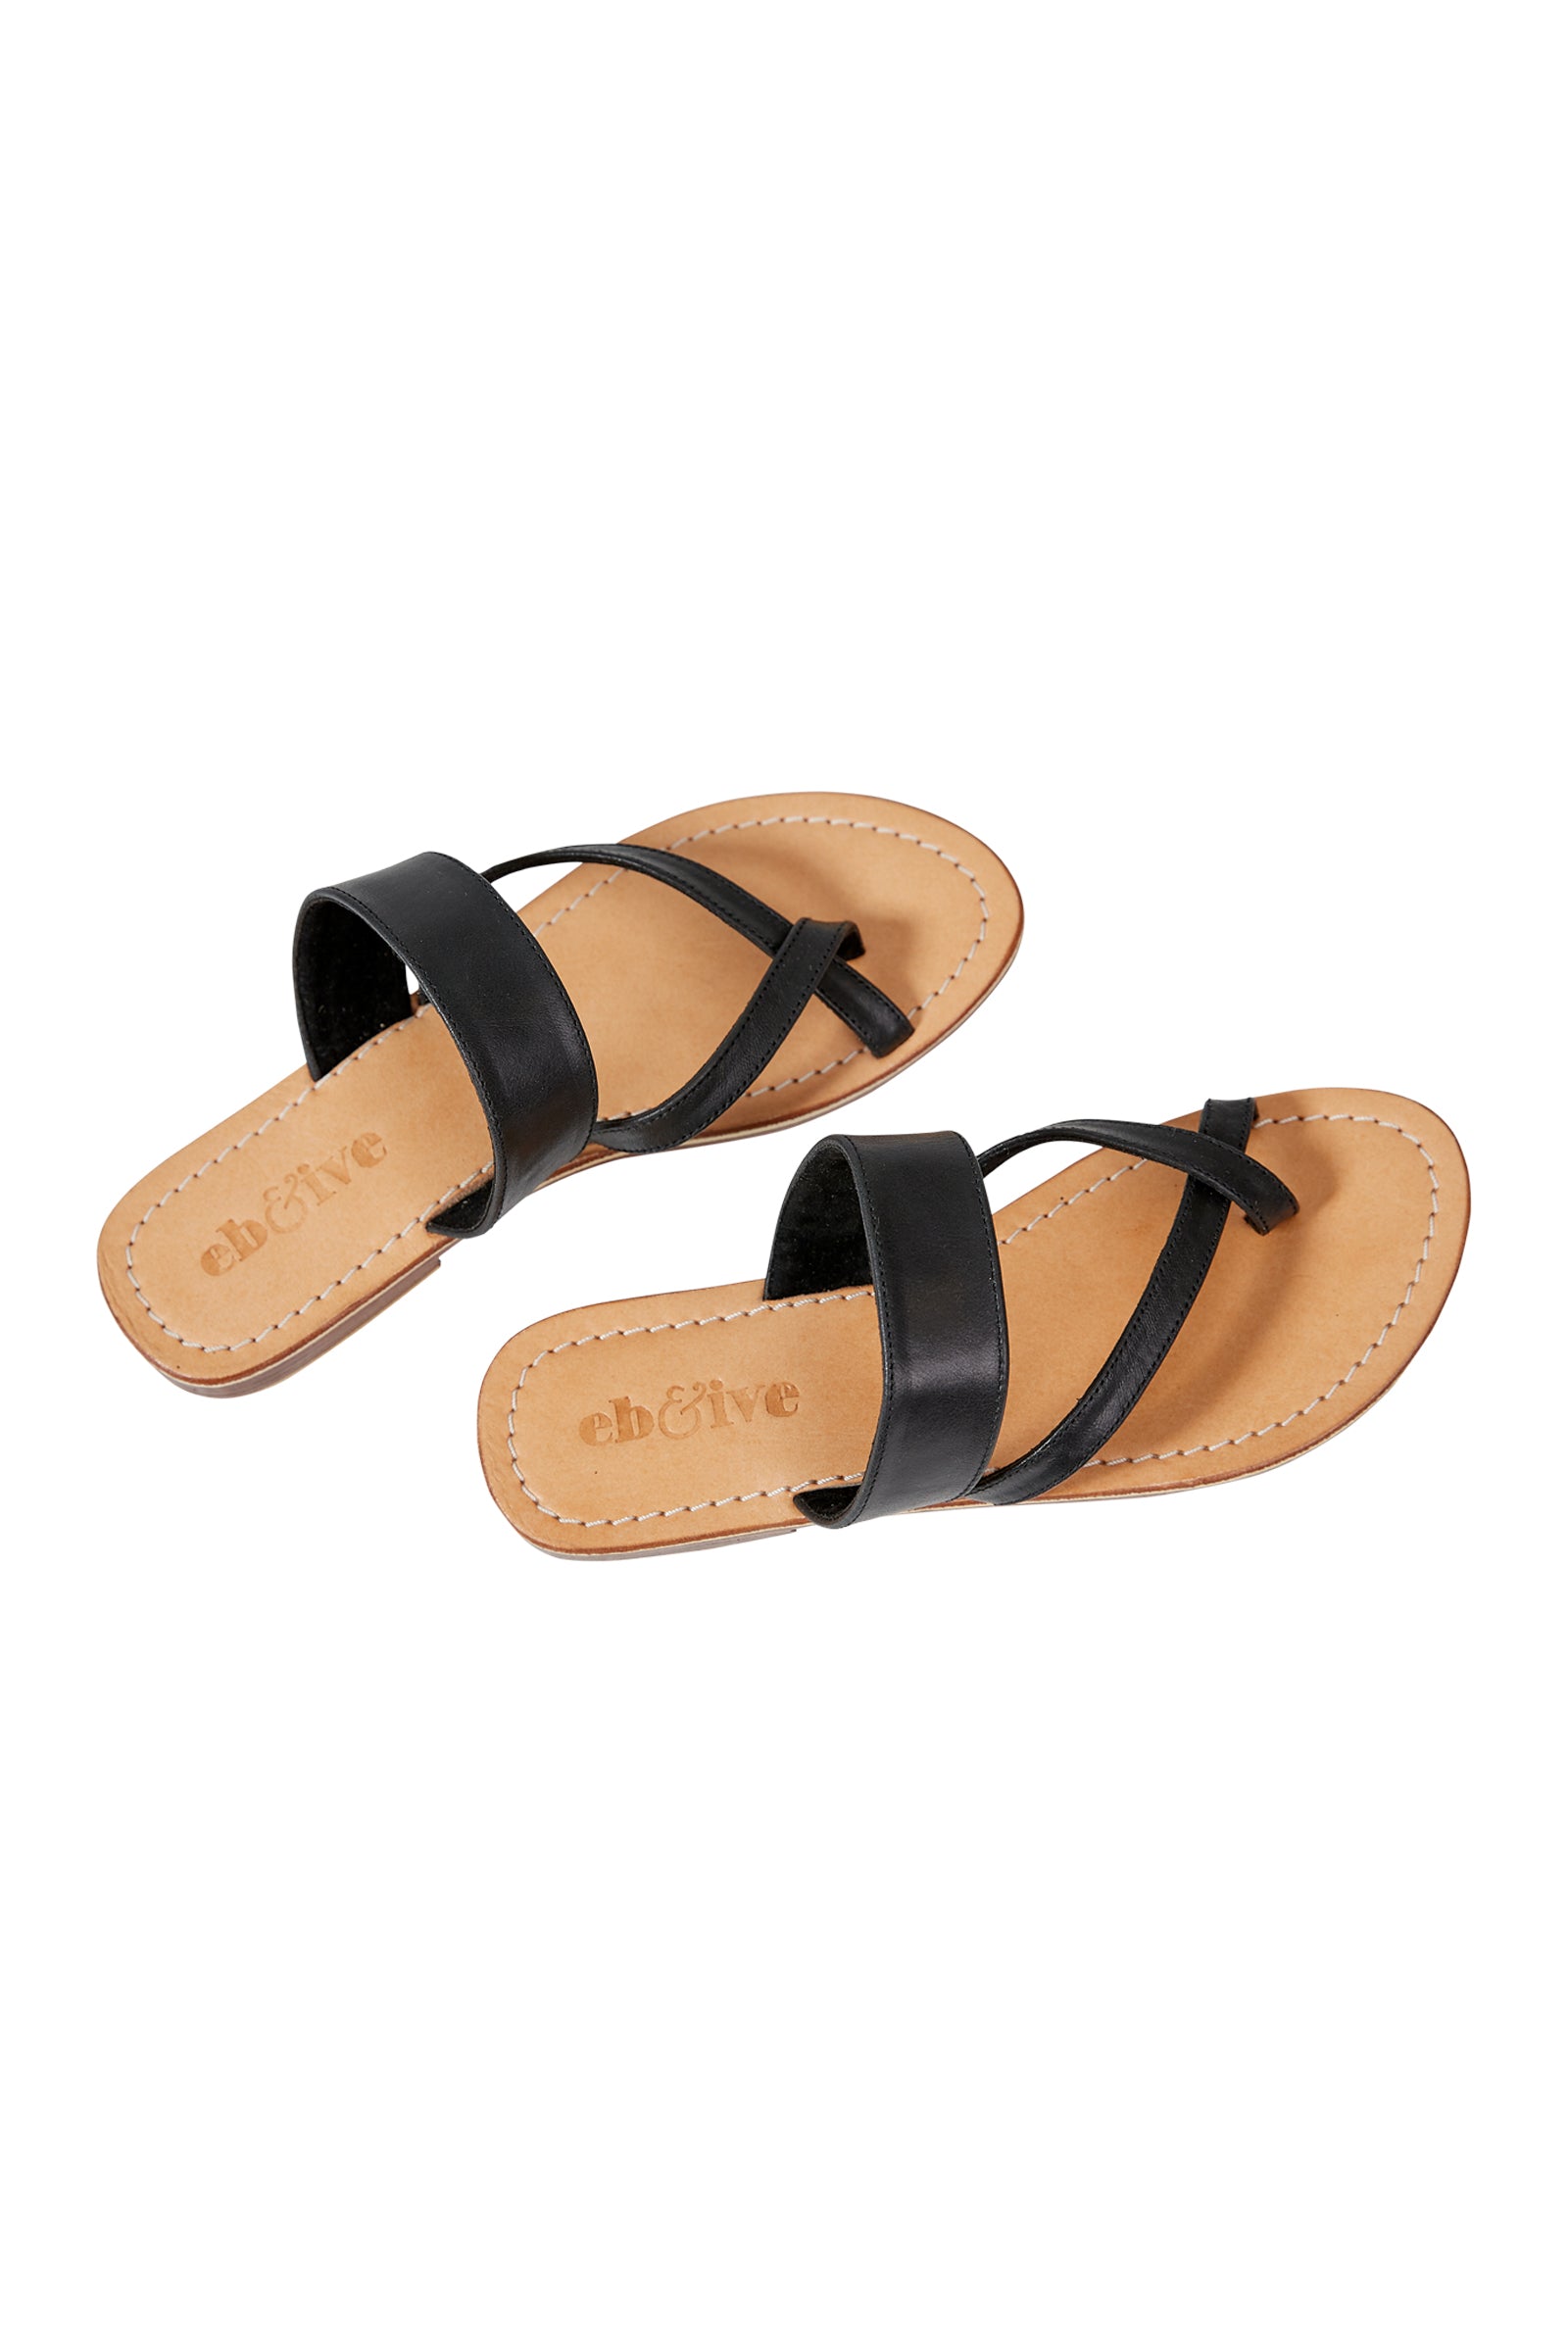 Verve Sandal - Black - eb&ive Footwear - Sandals